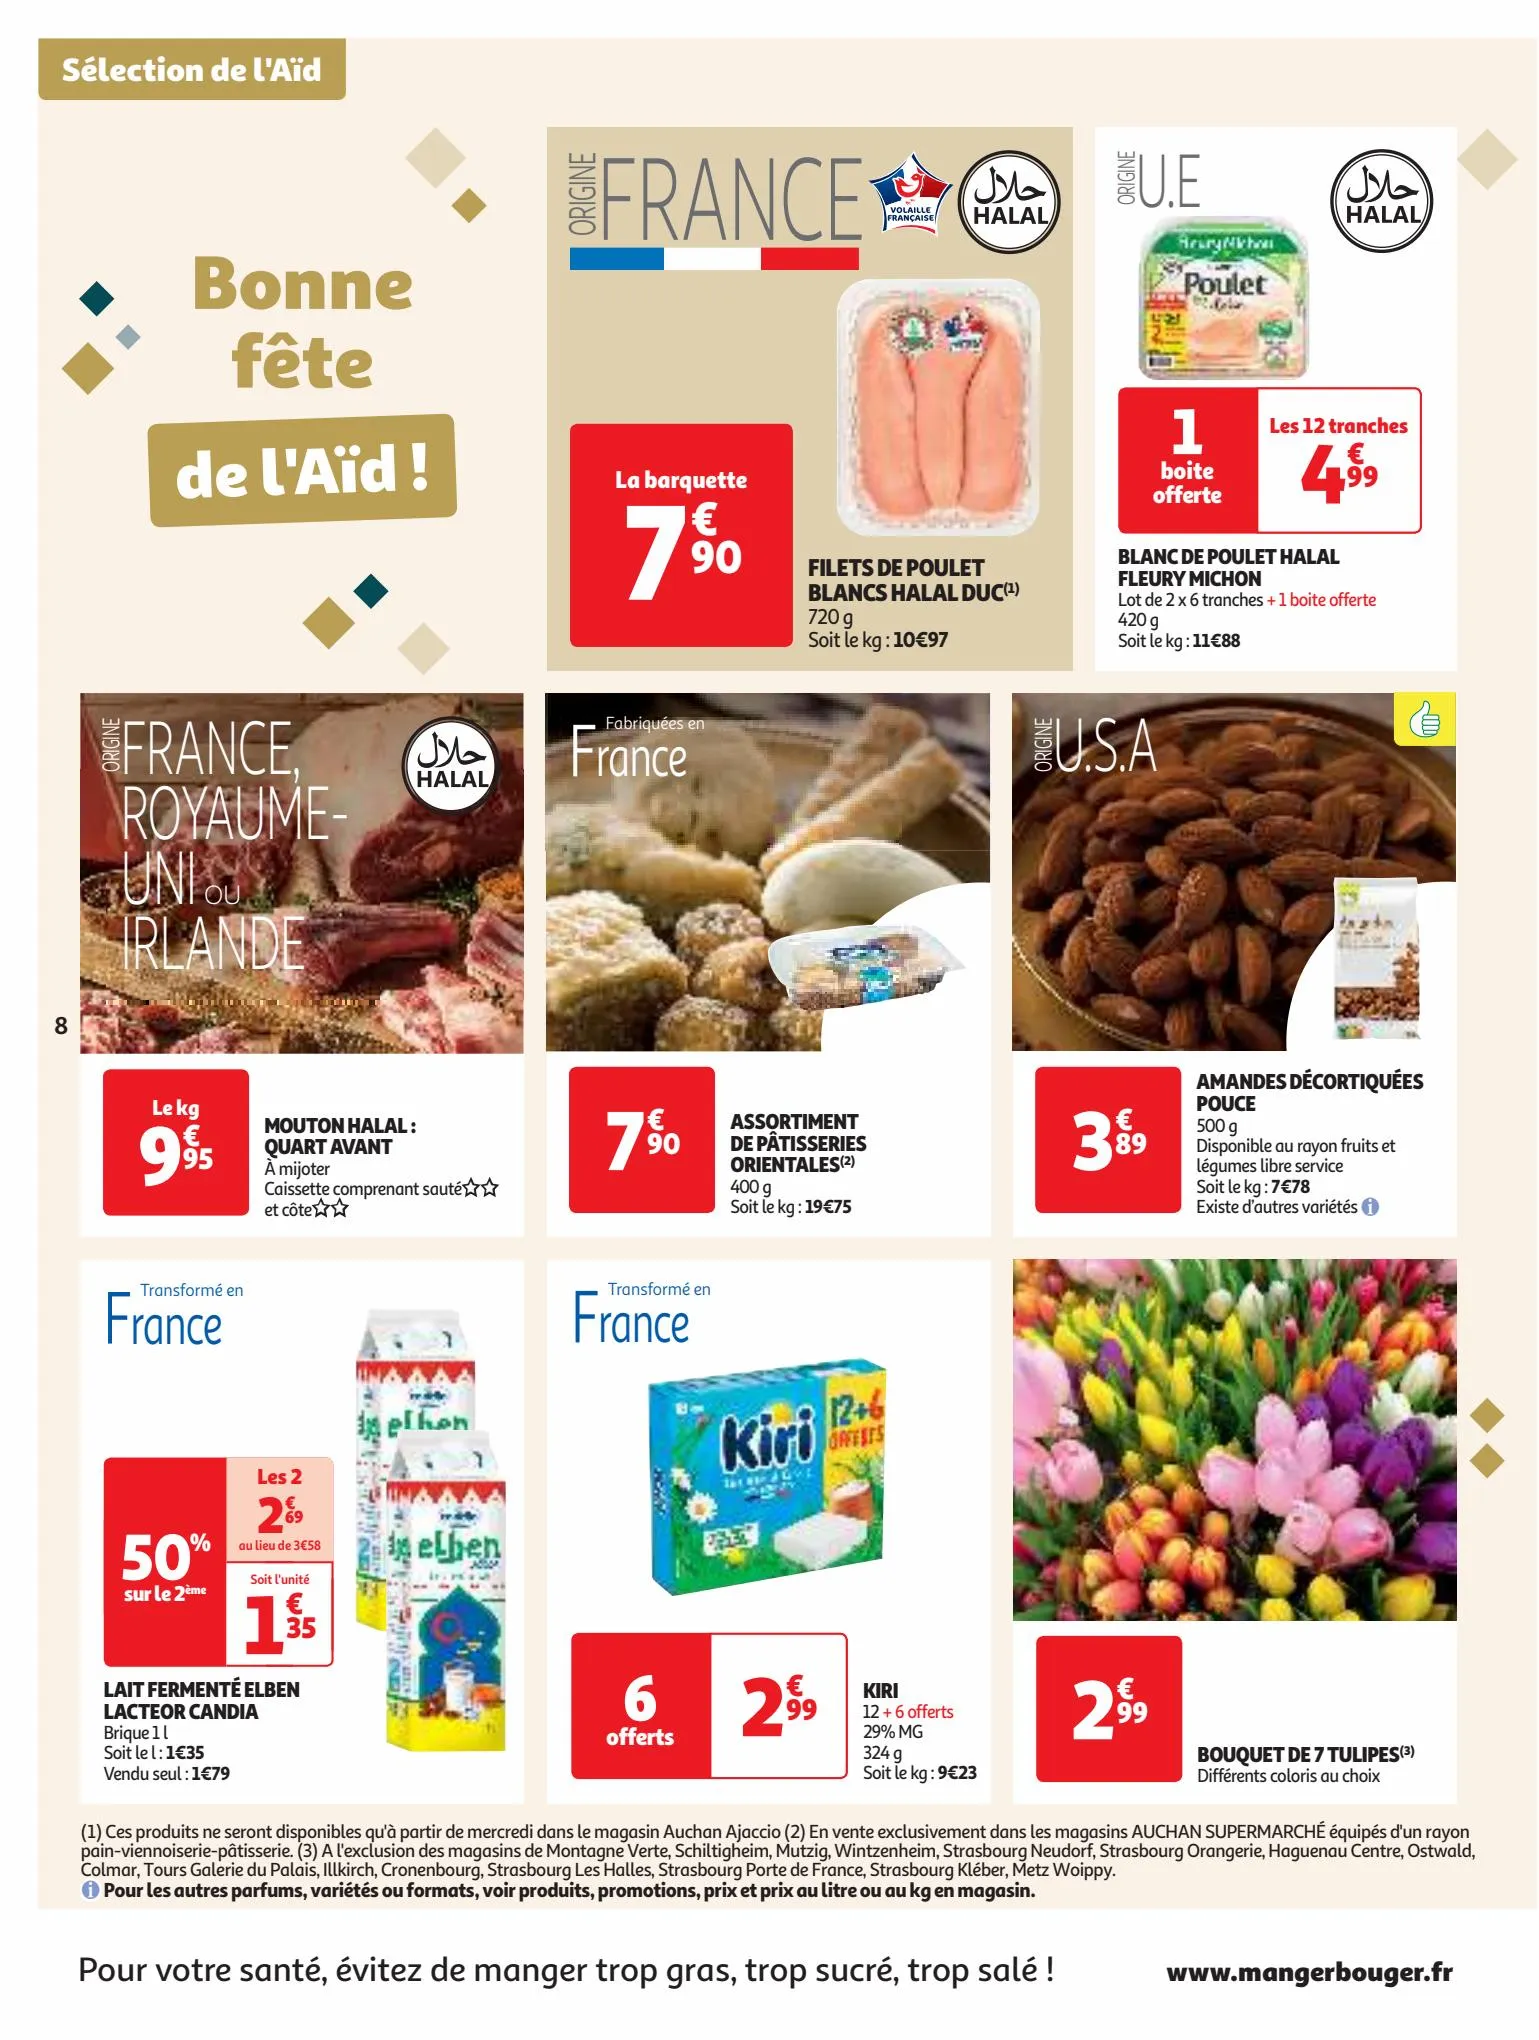 Catalogue Plein d'offres sur nos marques Auchan, page 00008